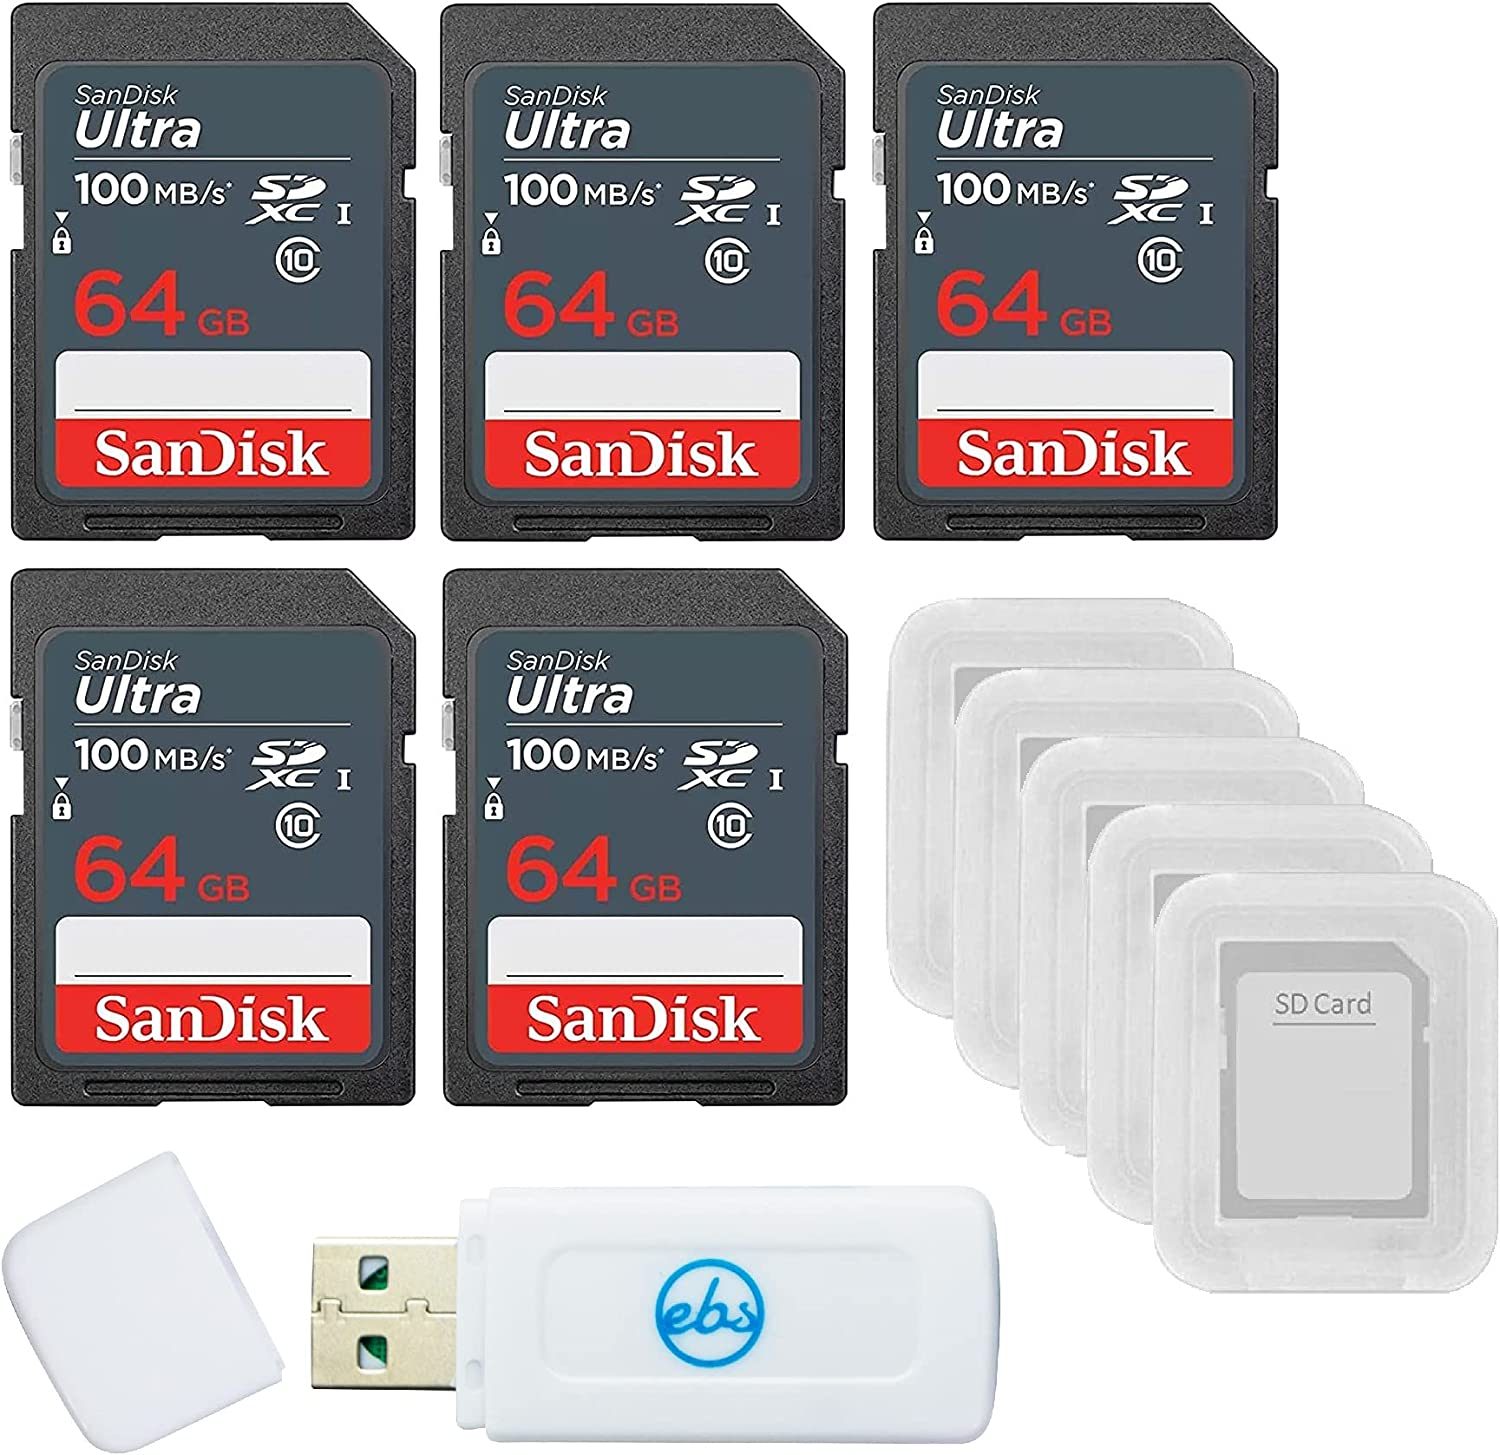 샌디스크 64GB 울트라 SD 메모리 카드 5팩 SDXC UHS-I Class 10 SDSDUNR-064G-GN3 5개의 케이스와 1개의 Stromboli 리더 제외한 모든 것이 포함된 번들